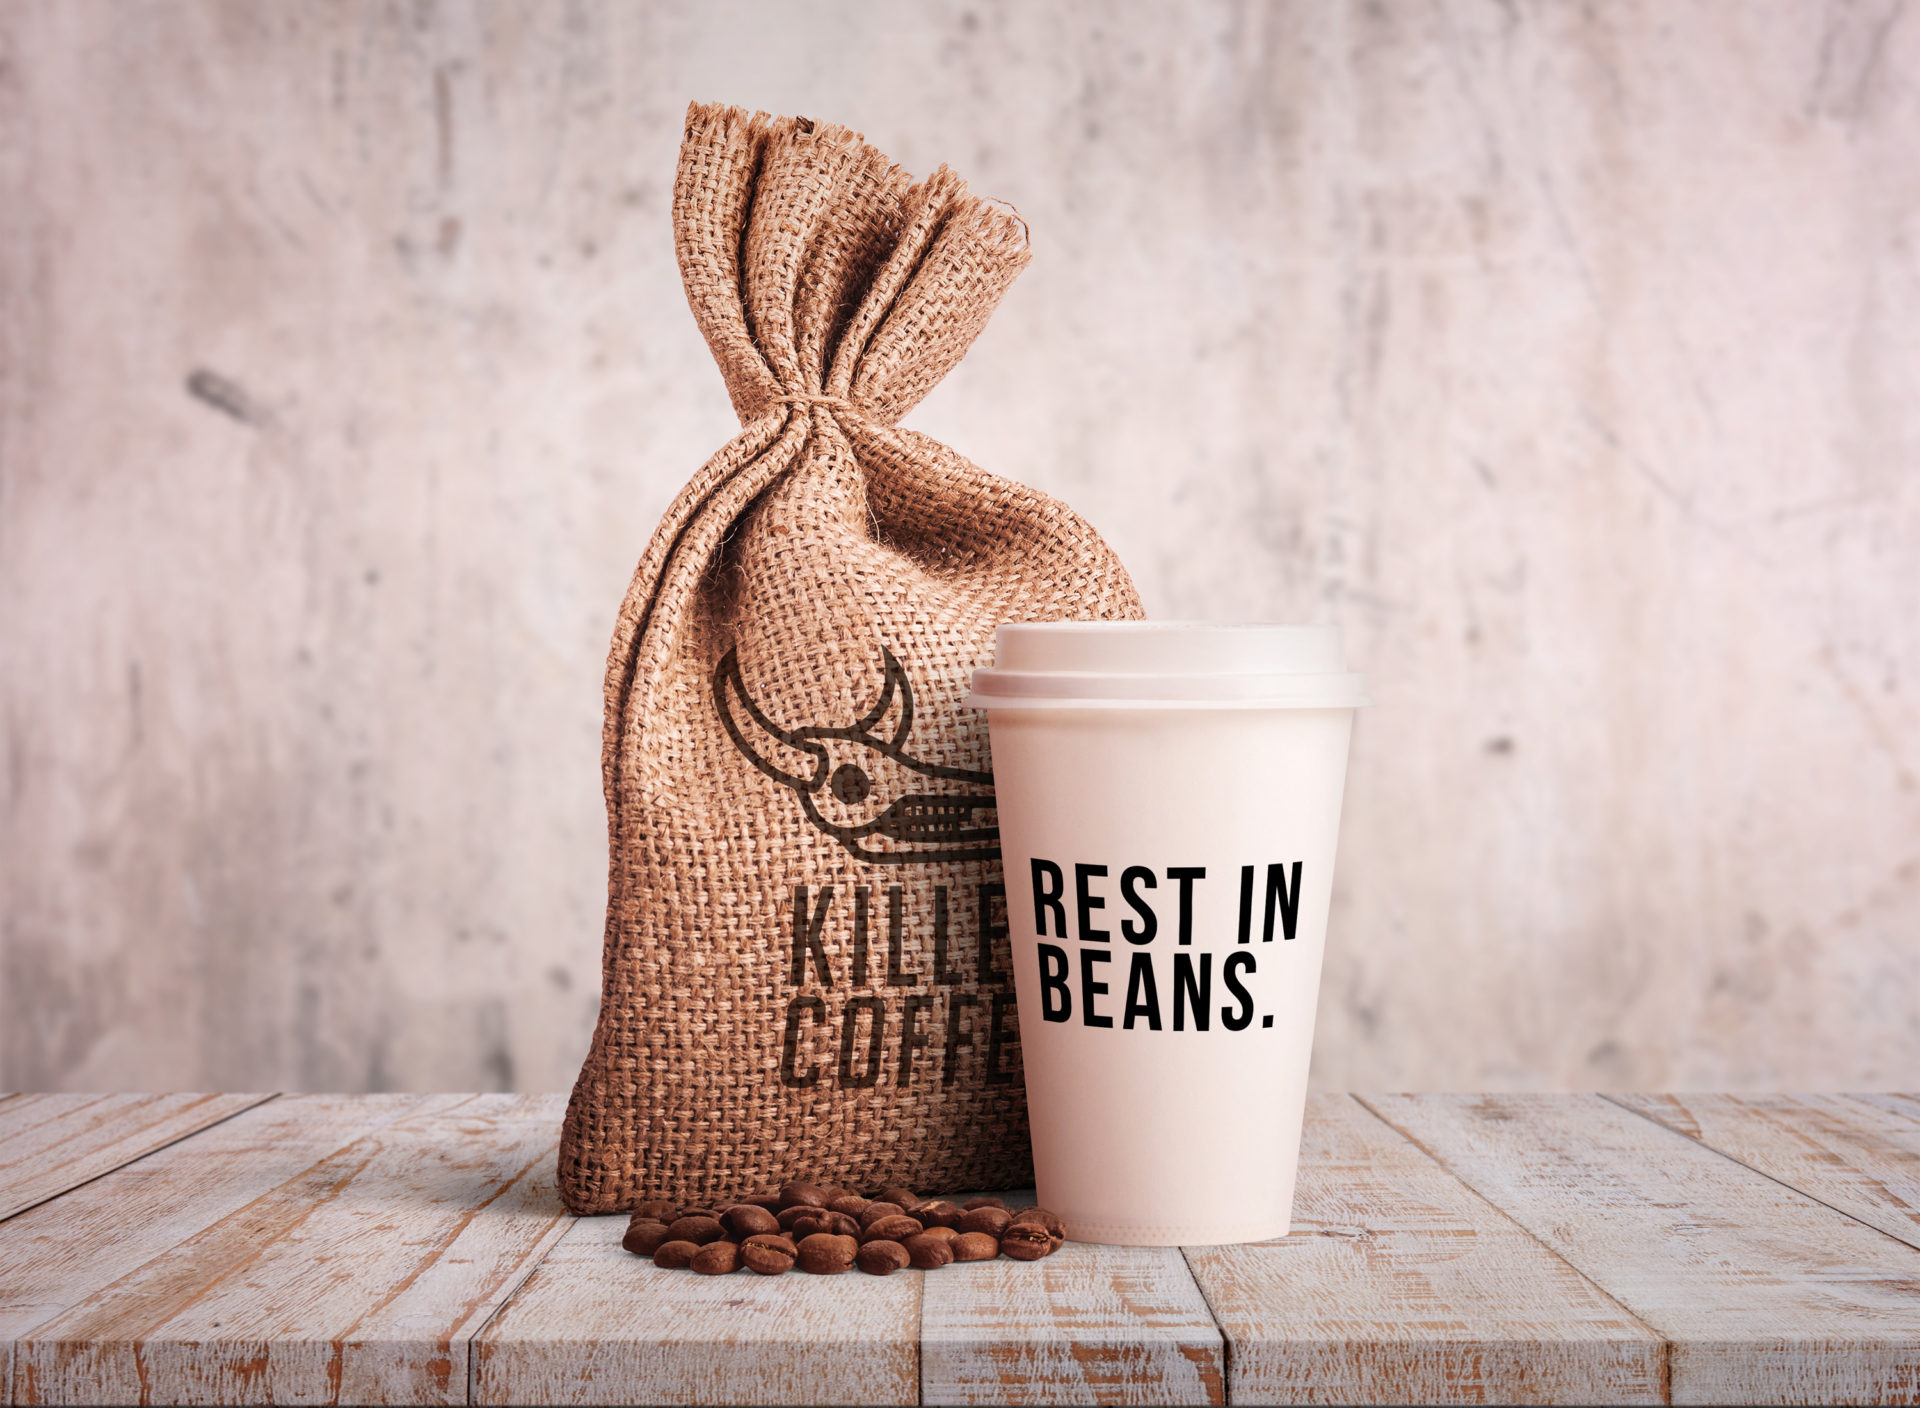 killercoffee